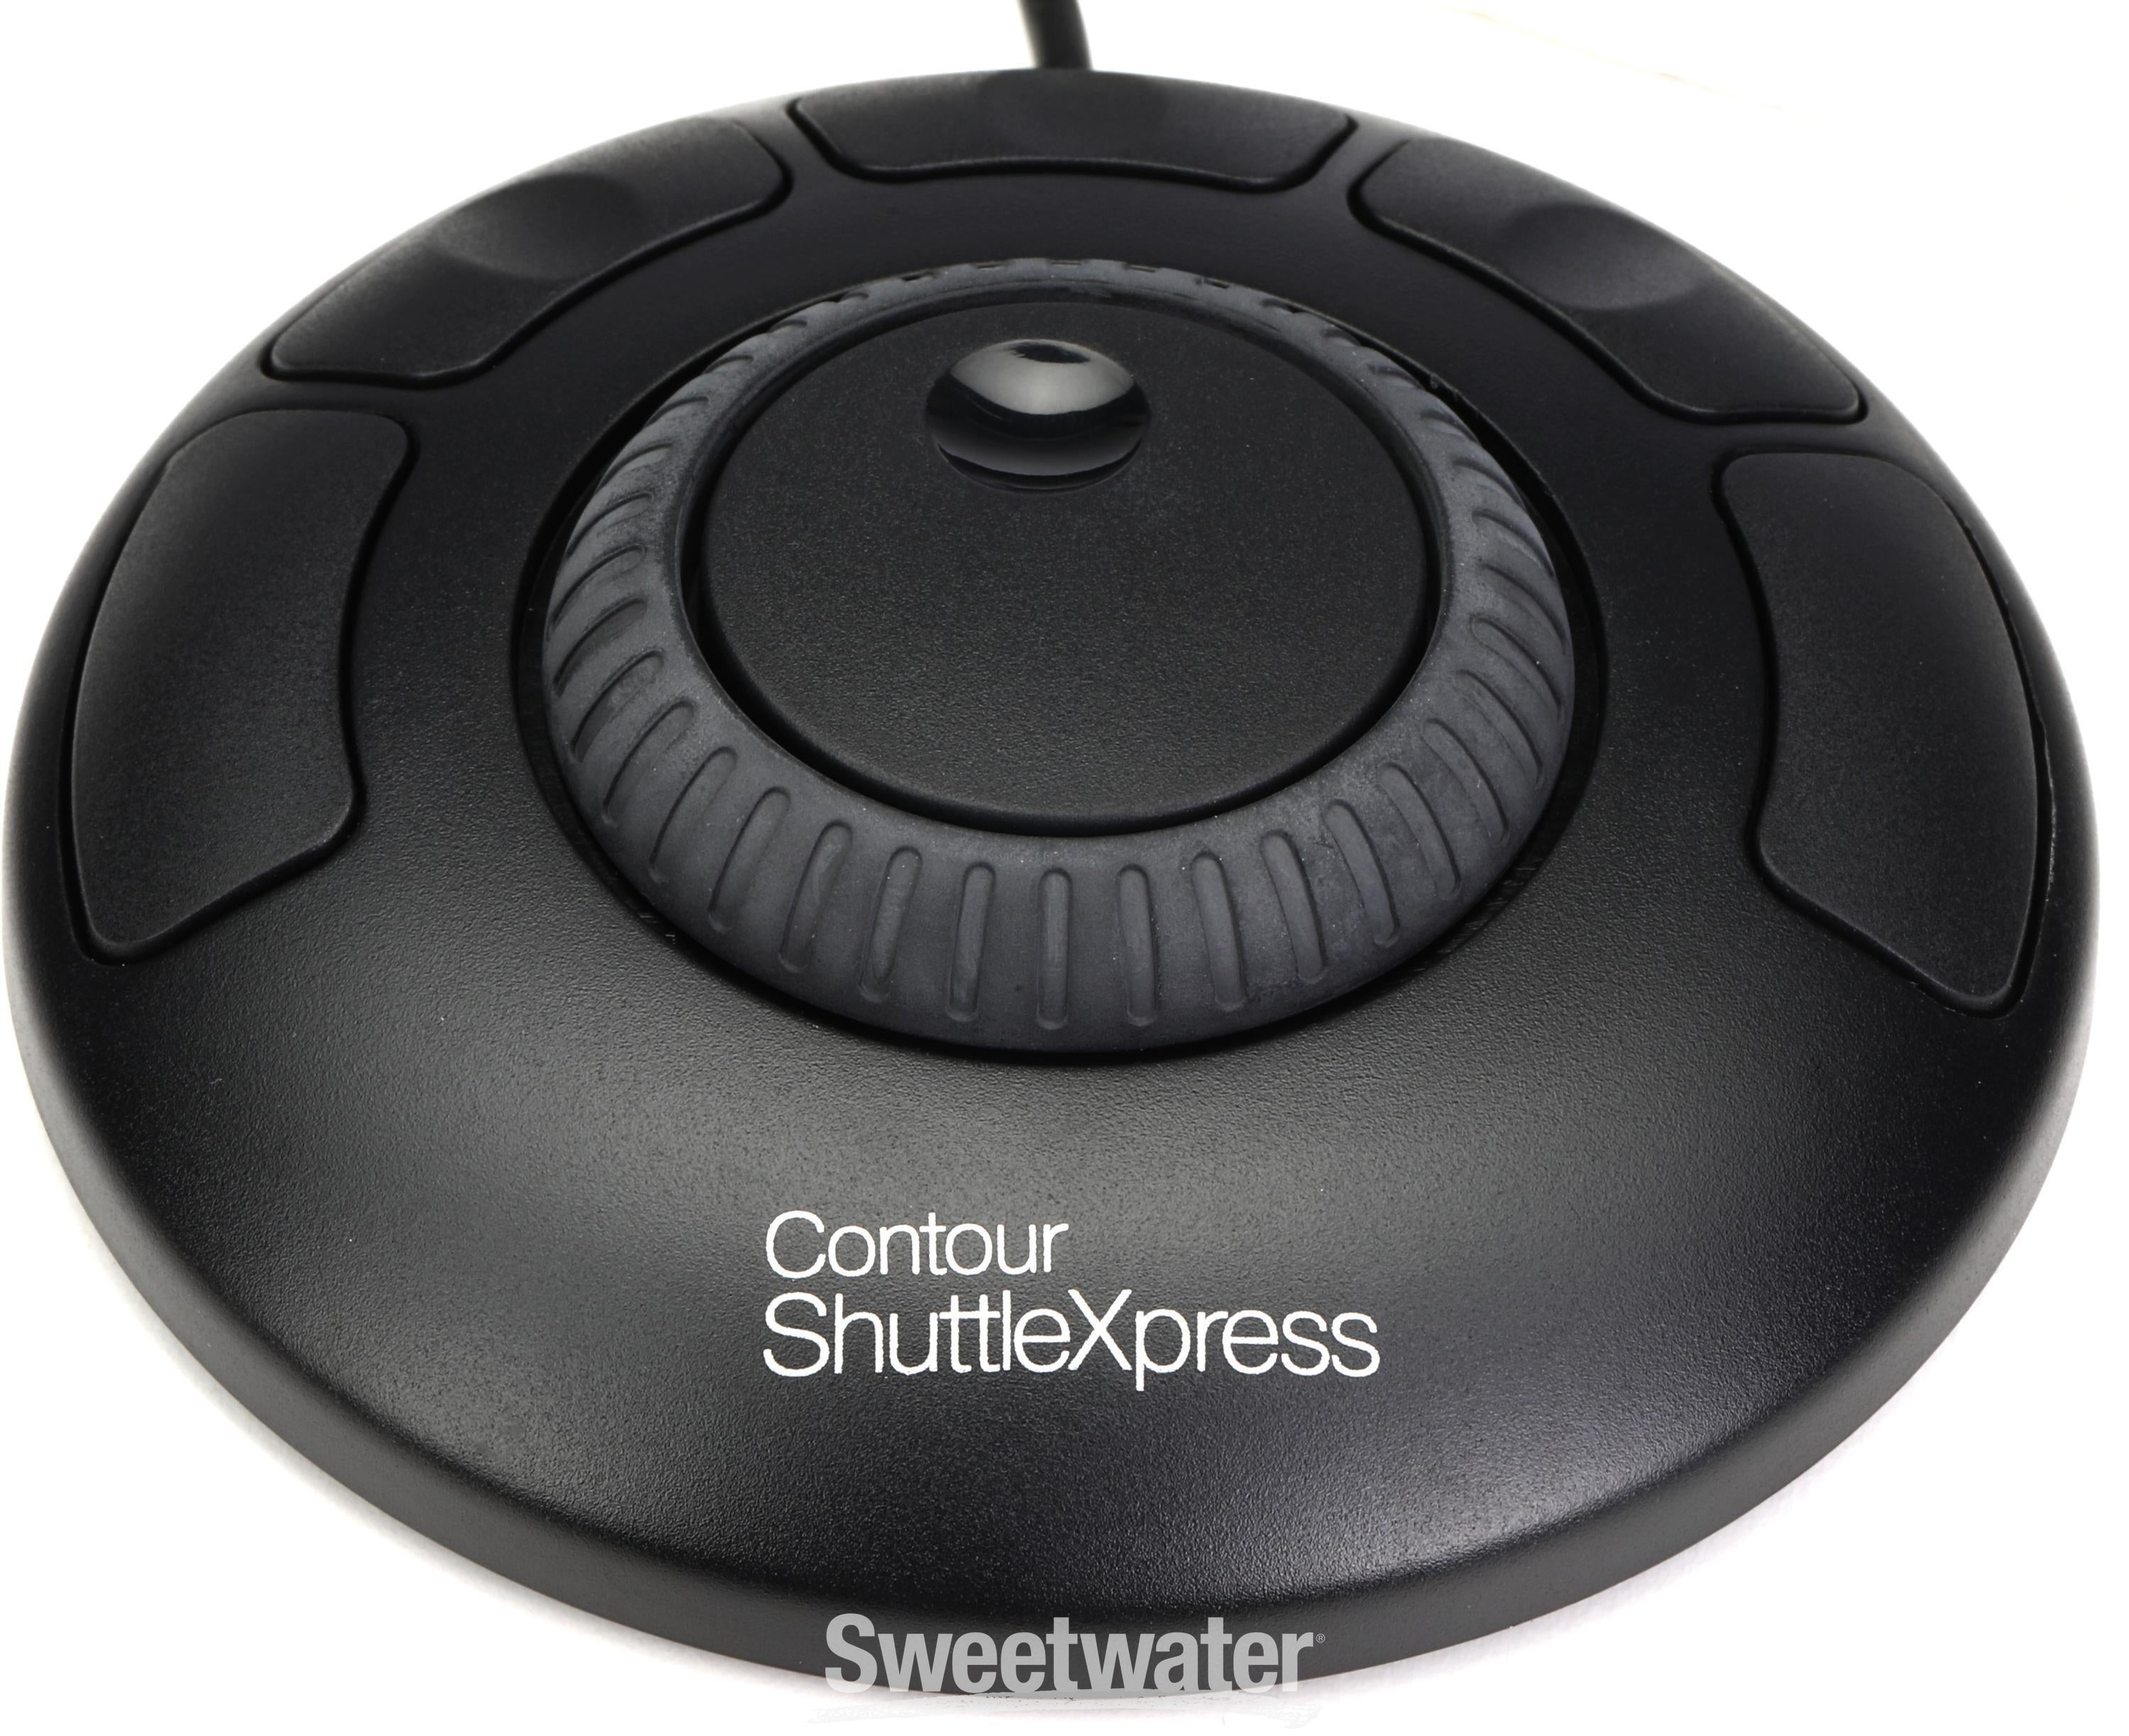 Contour ShuttleXpress 5-Button Jog/Shuttle Controller